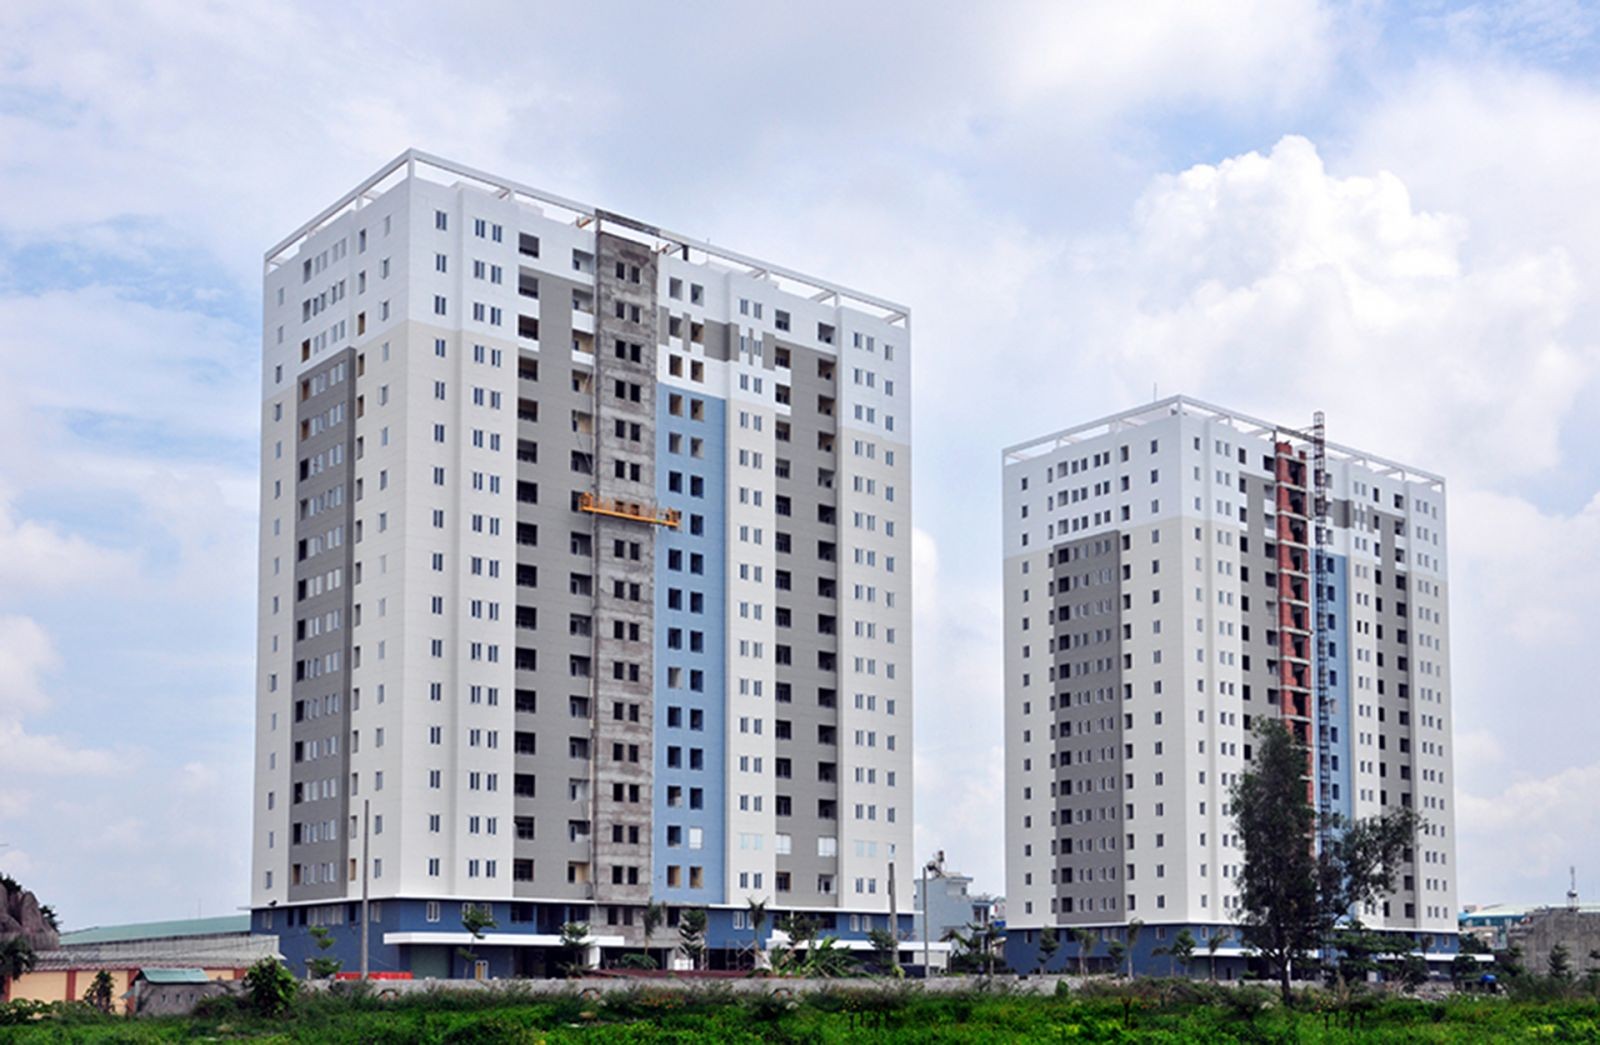 
Chung cư Tín Phong (Quận 12, TP Hồ Chí Minh)&nbsp;chưa được cấp giấy chứng nhận cho người mua nhà do đang tranh chấp giữa chủ đầu tư và đơn vị phát triển dự án.
